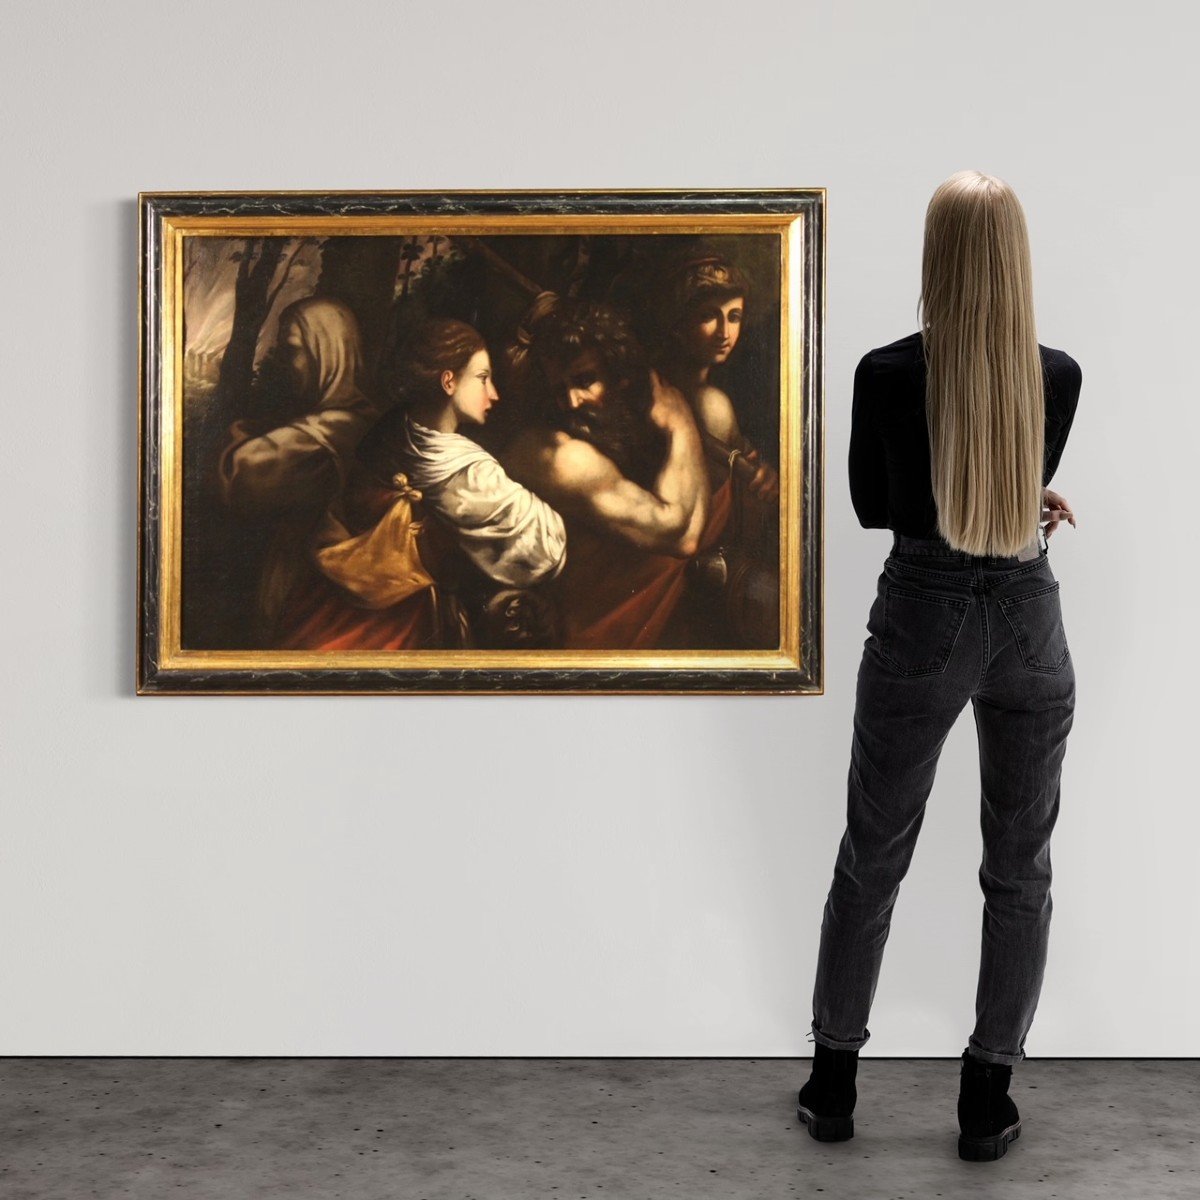 Scuola italiana del XVII secolo, Lot e le figlie fuggono da Sodoma -photo-4